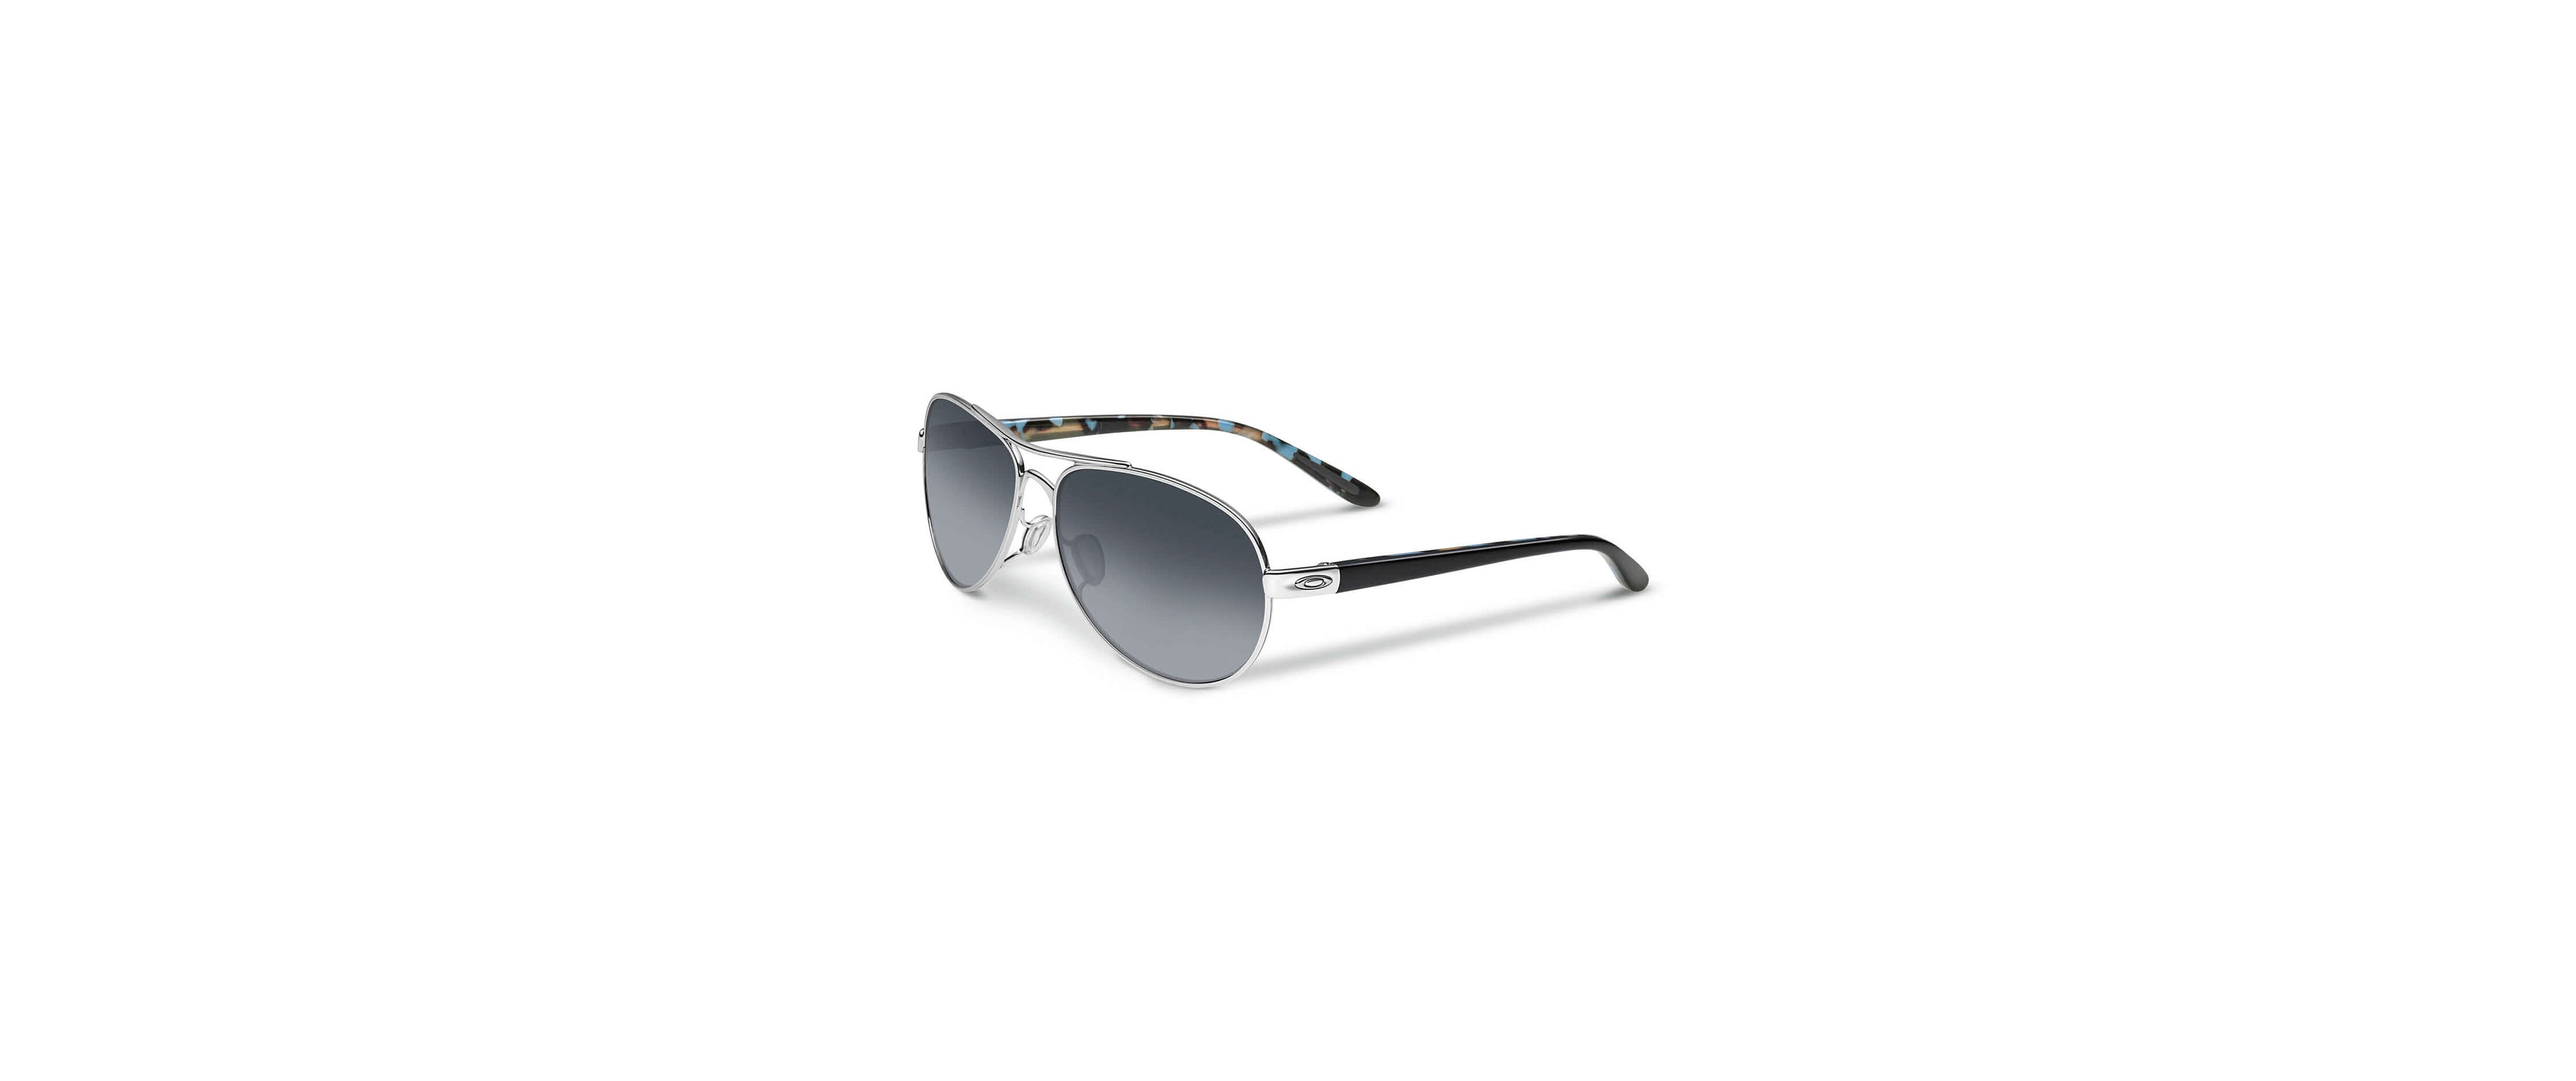 oakley tie breaker sunglasses